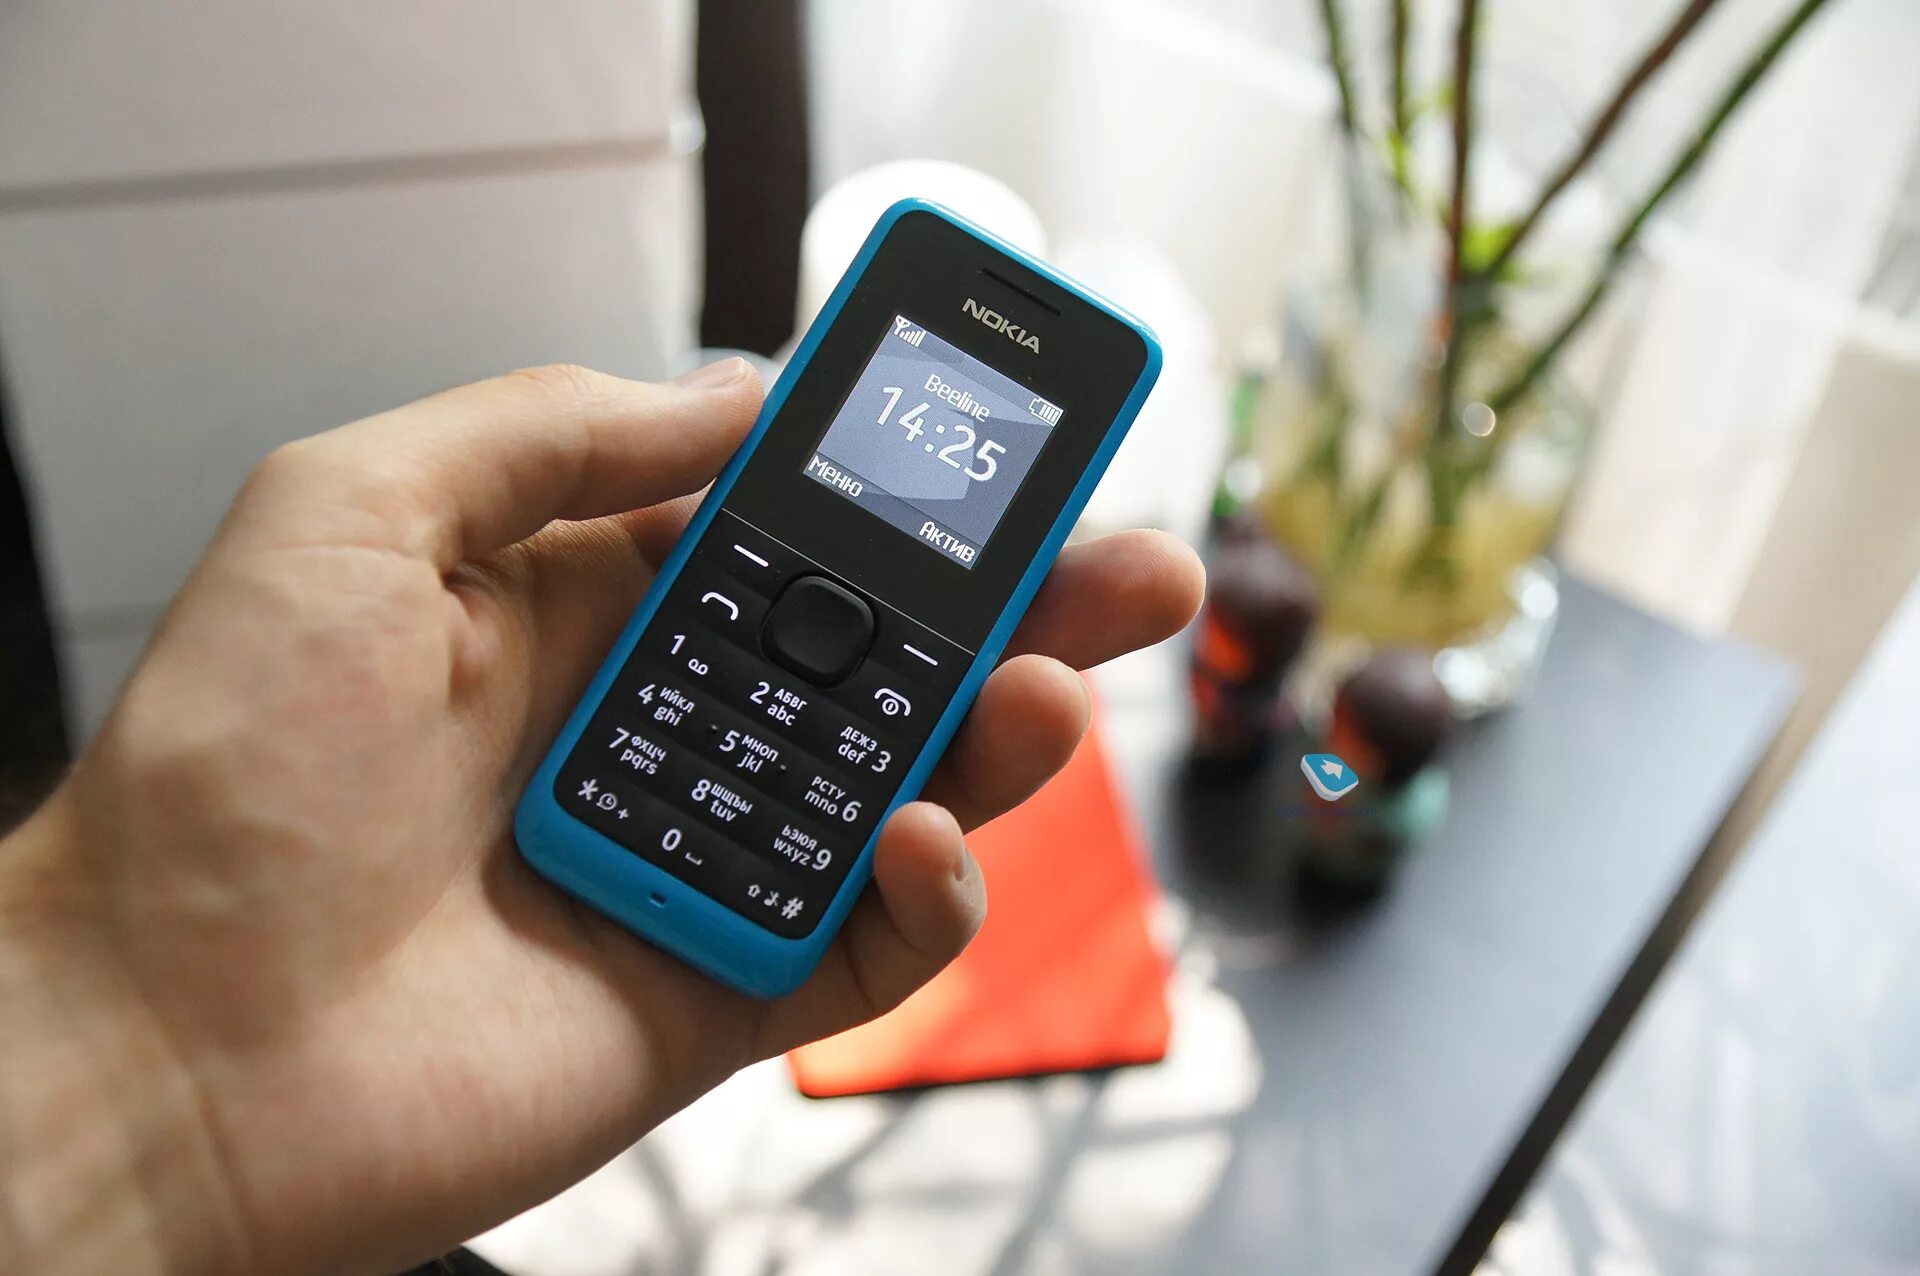 Nokia 105 2013. Мобильный телефон кнопочный Nokia 105. Nokia 1205. Самый простой телефон. Продать кнопочный телефон